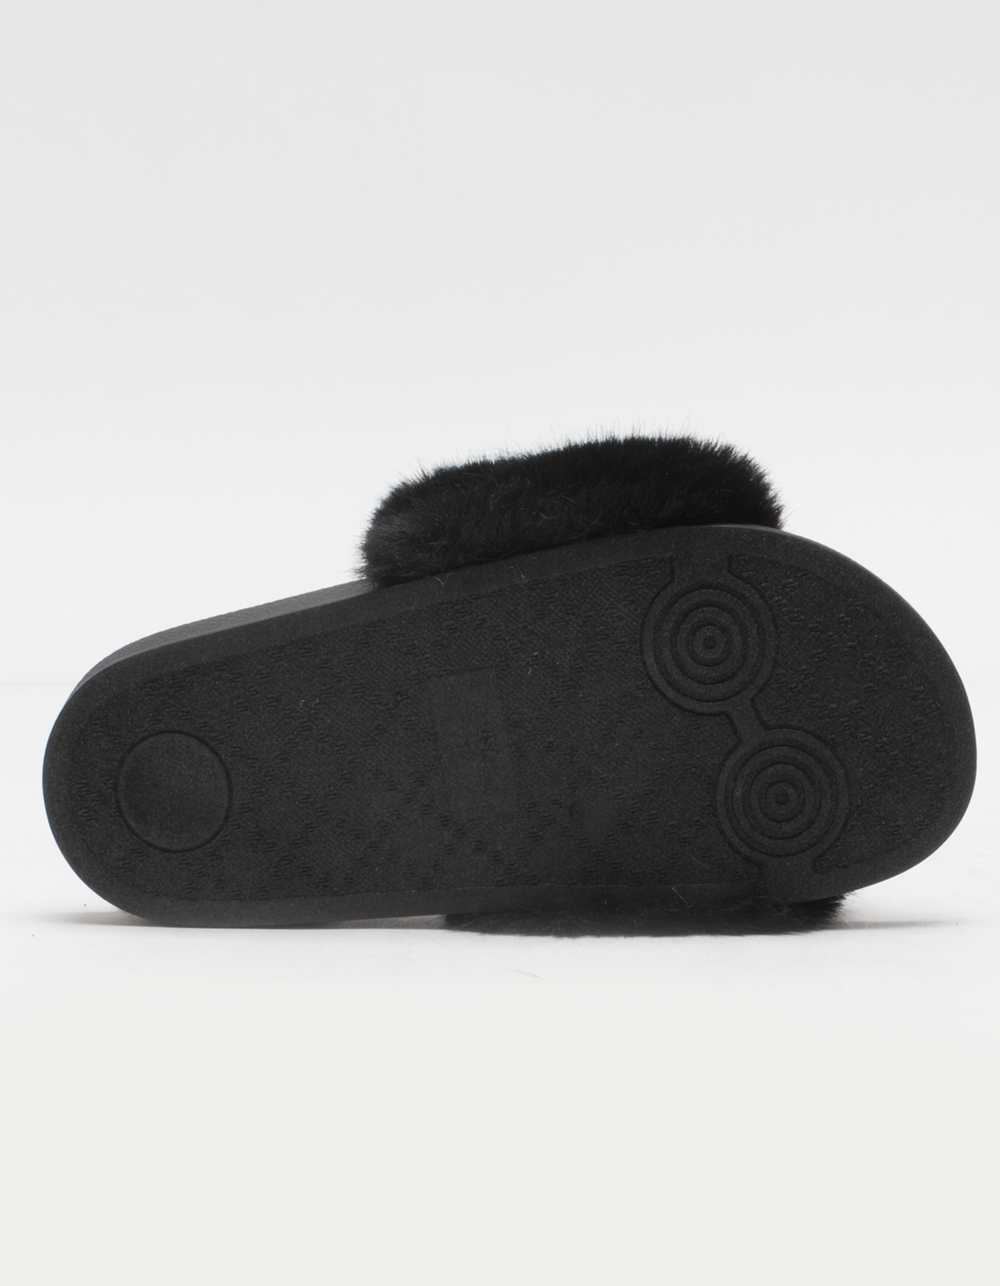 SODA Faux Fur Girls Black Slide Sandals - BLACK | Tillys